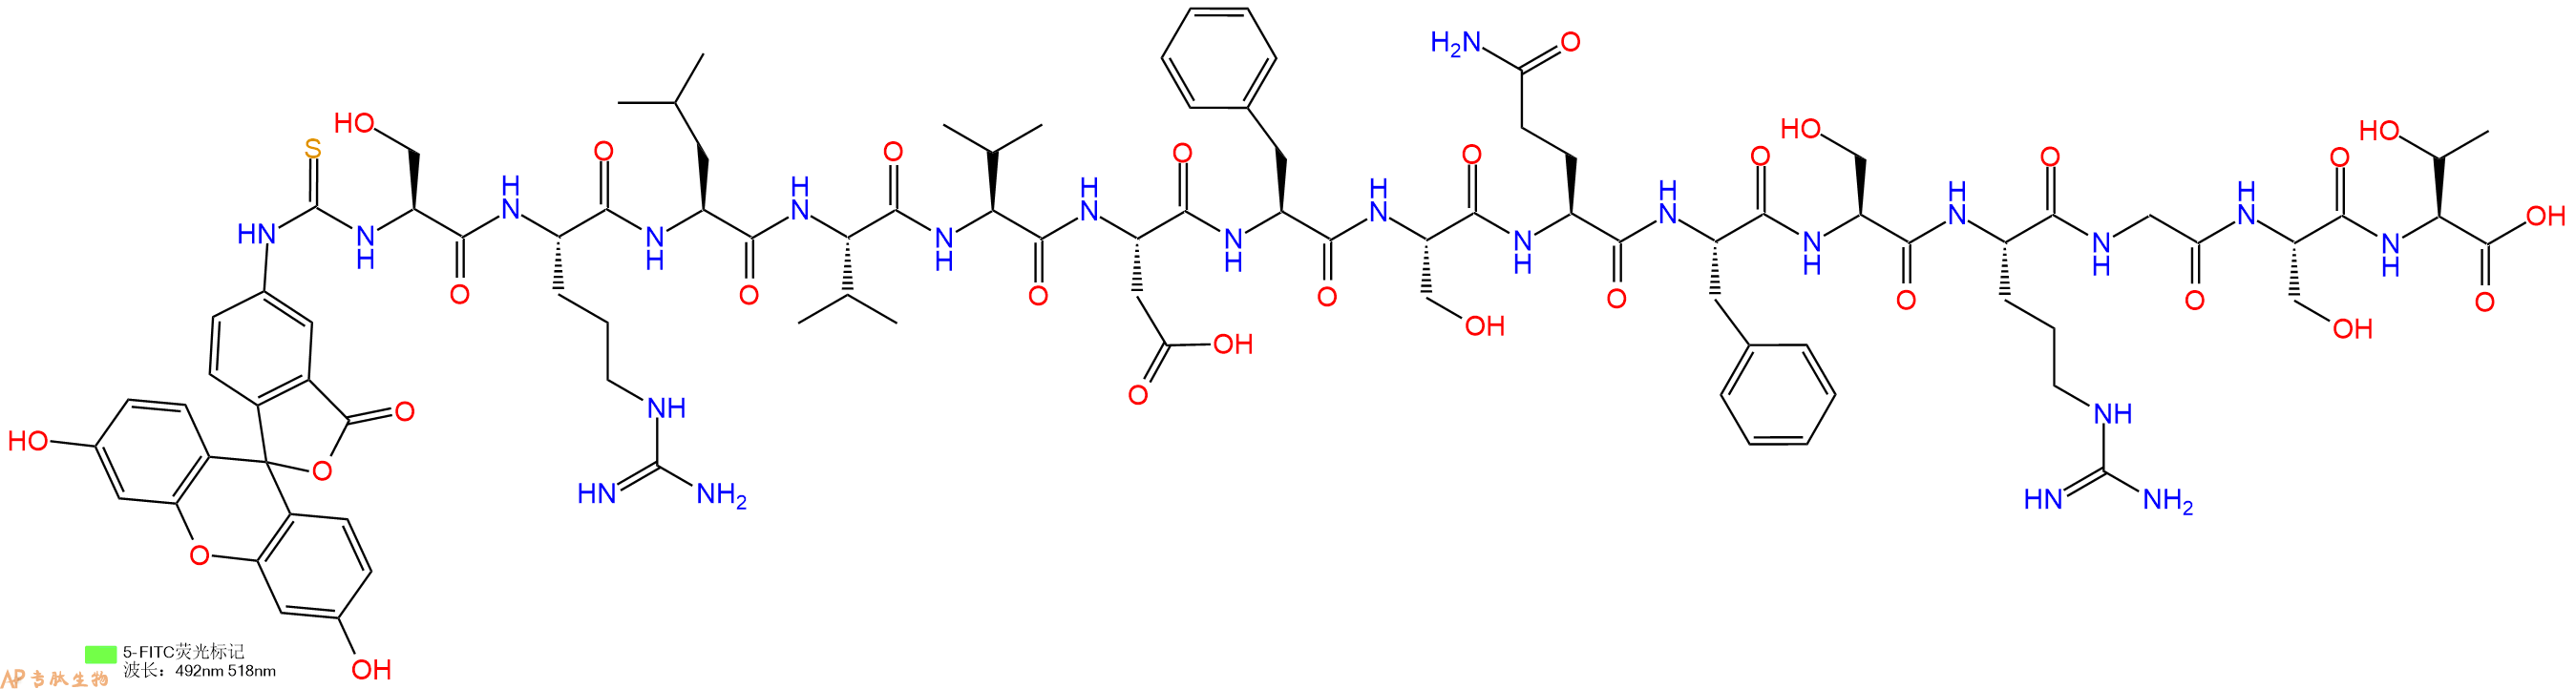 专肽生物产品5FITC-Ser-Arg-Leu-Val-Val-Asp-Phe-Ser-Gln-Phe-Ser-